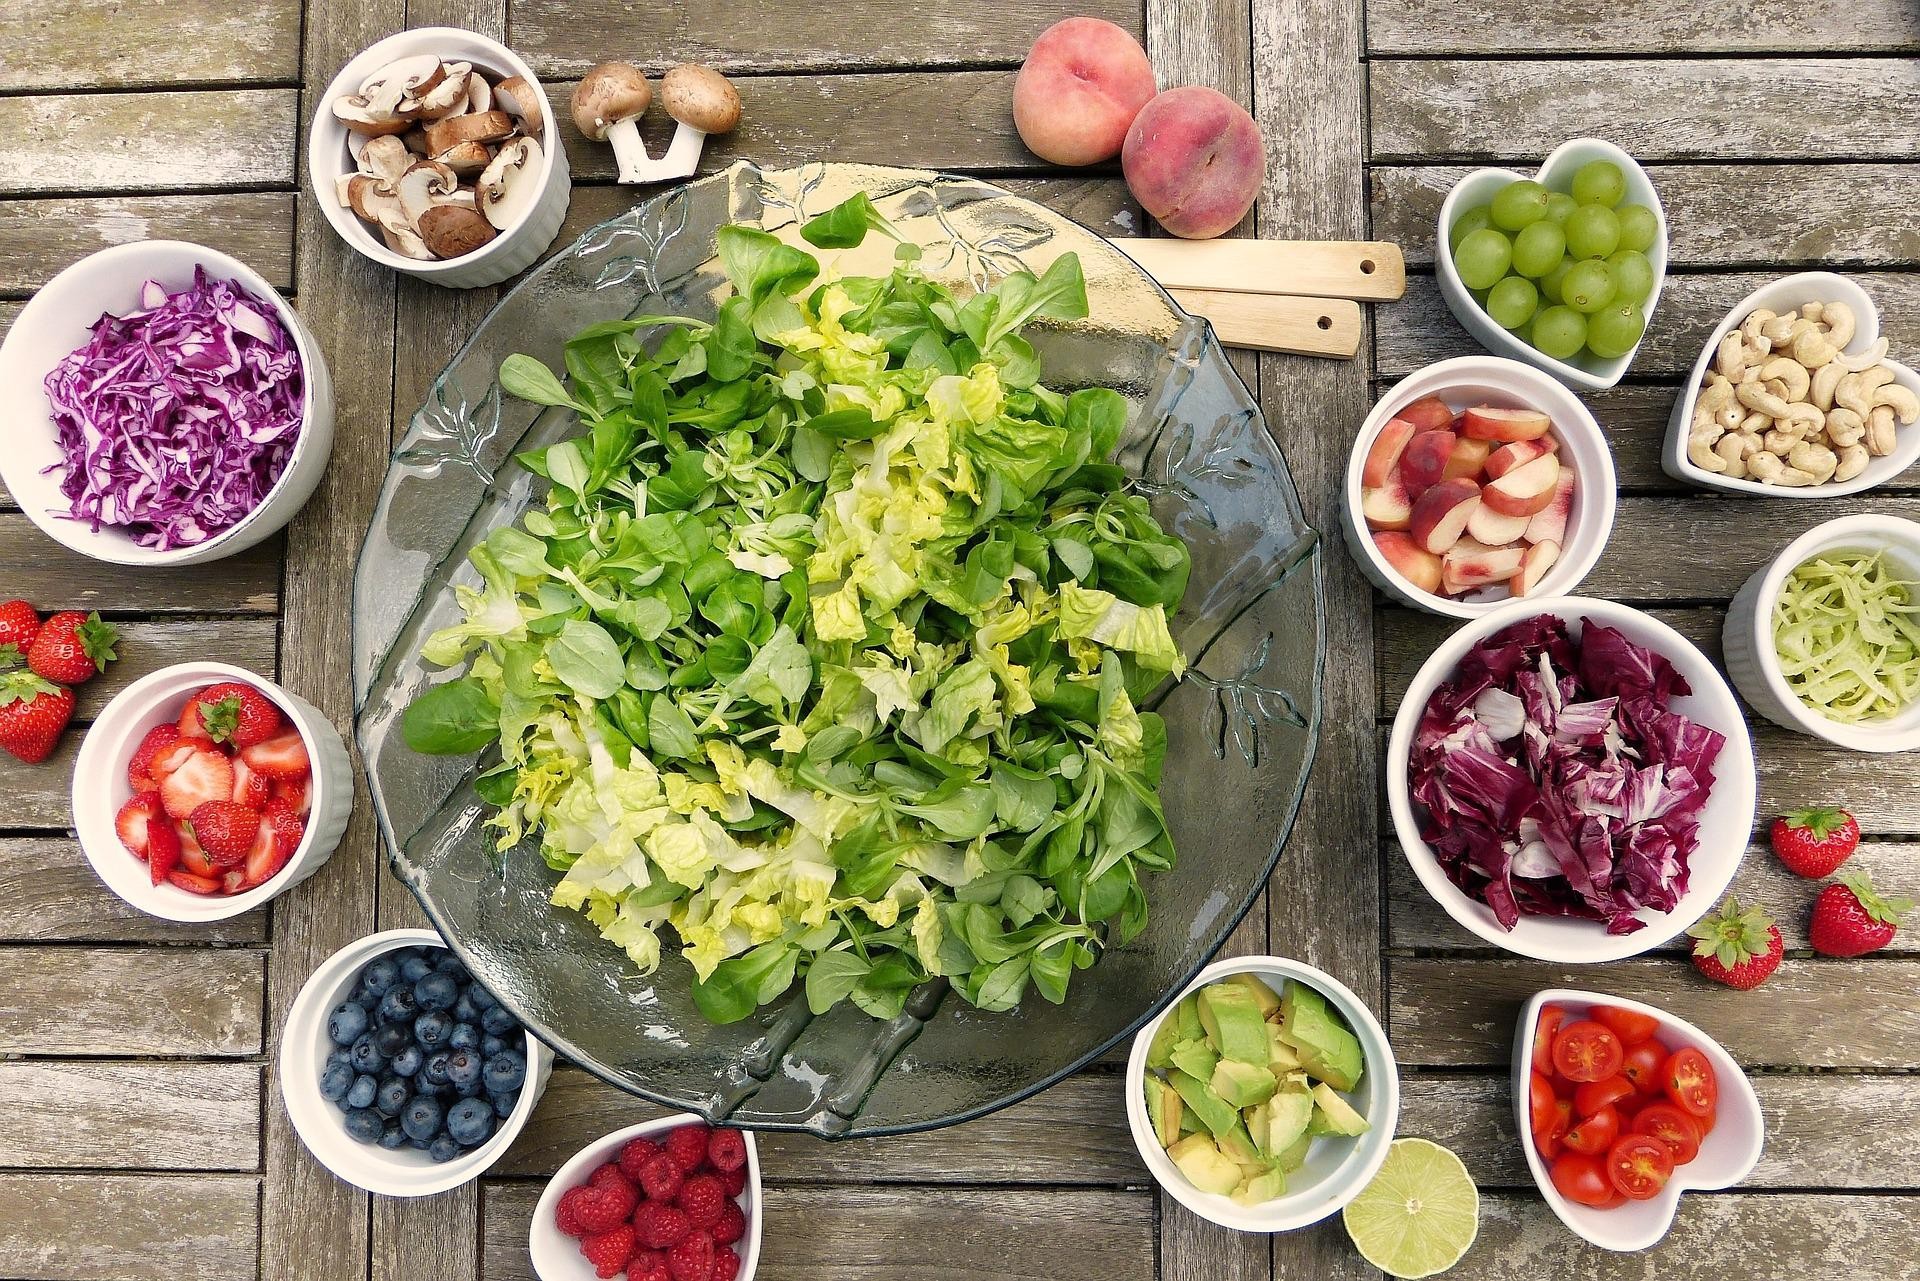 Na ausência da datação de alimentos, os consumidores podiam confiar em seus olhos e narizes, sentindo o cheiro de saladas e outros (Foto: pixabay)